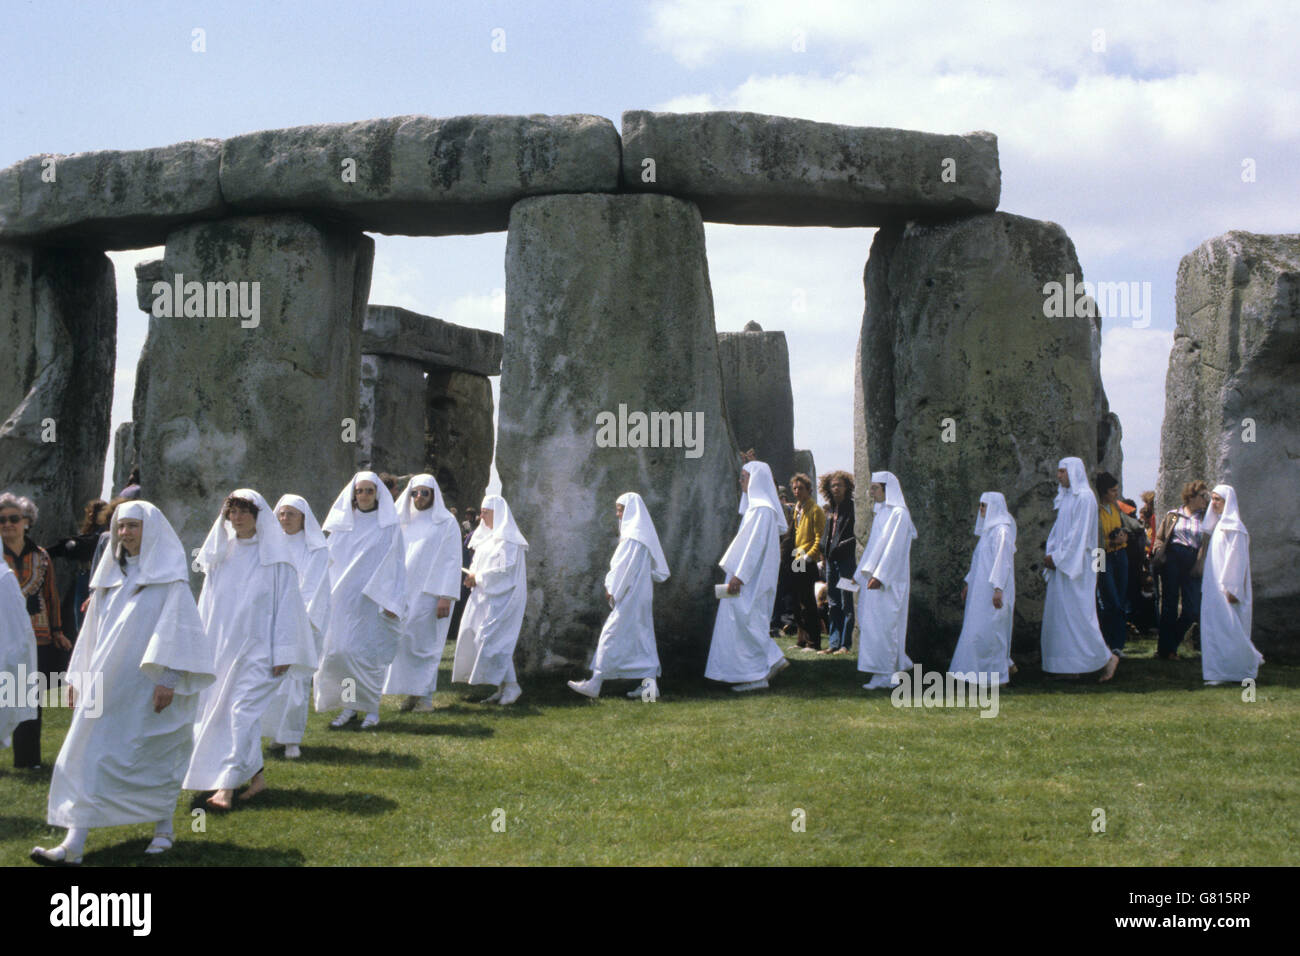 Costumi e Tradizioni - Midsummer Solstice - Stonehenge. Una processione dei partecipanti bianchi al Druid Midsummer Solstice di Stonehenge. Foto Stock